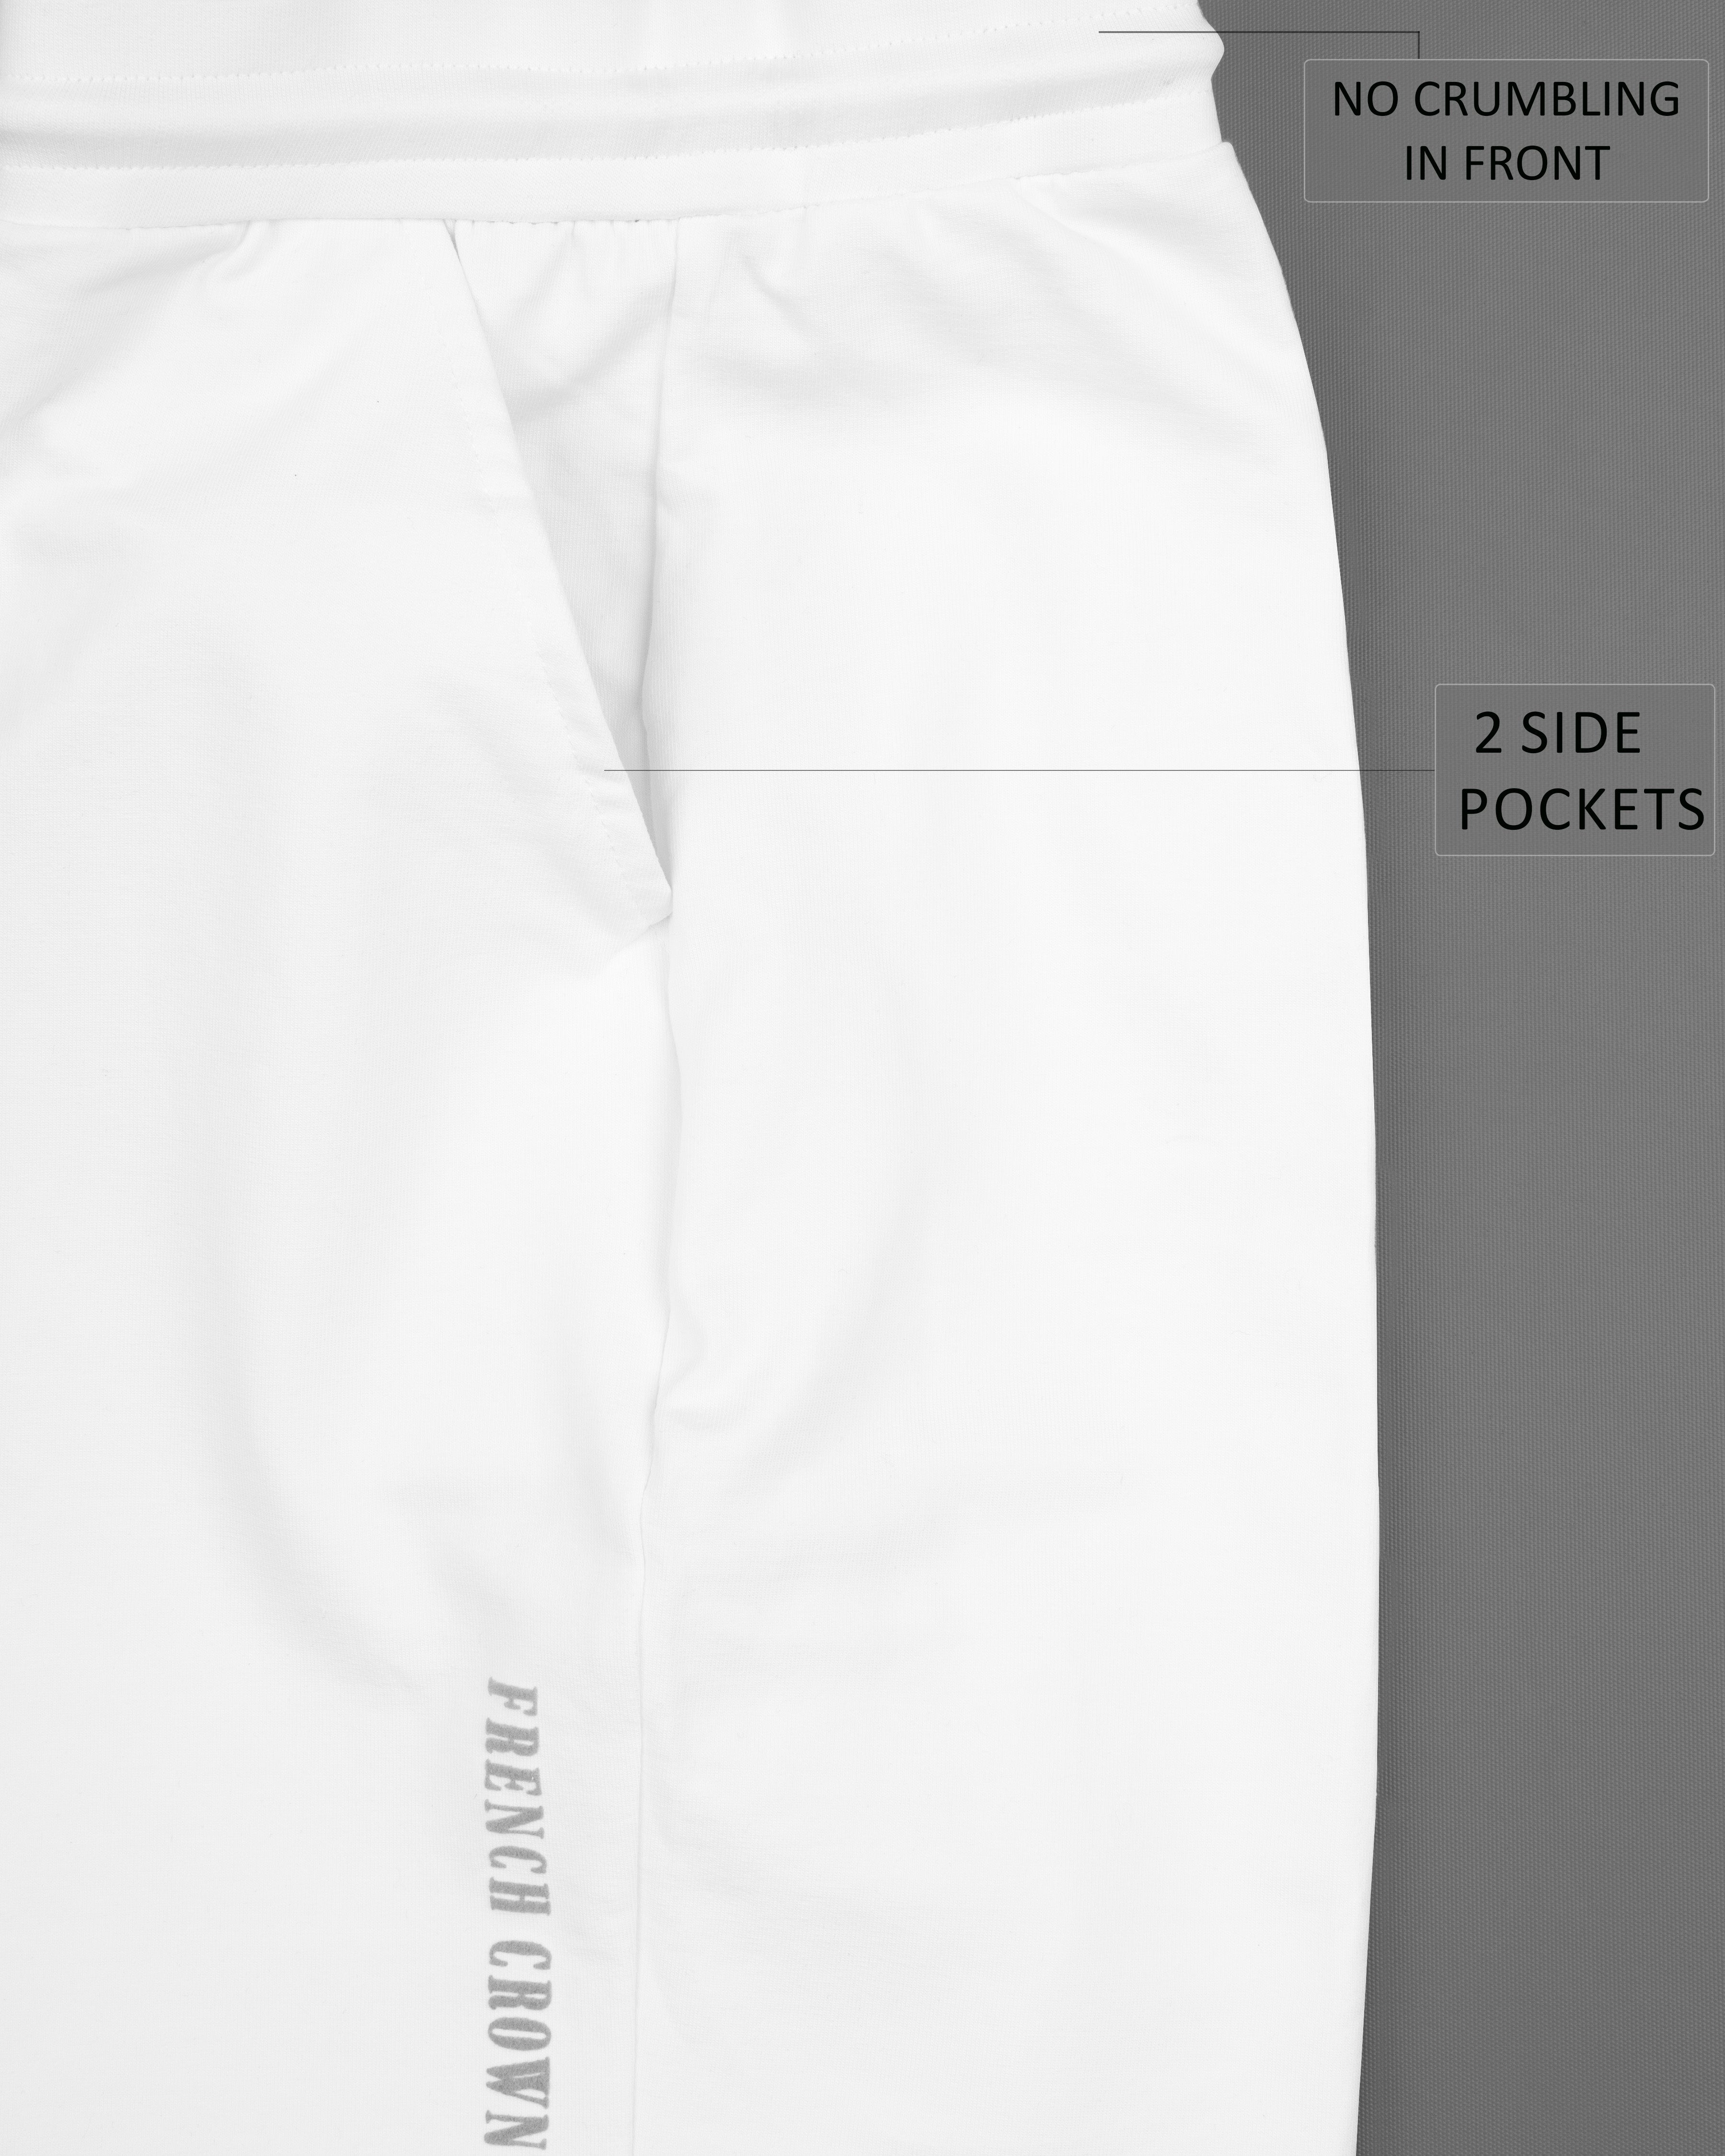 Bright White Premium Cotton  Shorts SR177-28, SR177-30, SR177-32, SR177-34, SR177-36, SR177-38, SR177-40, SR177-42, SR177-44